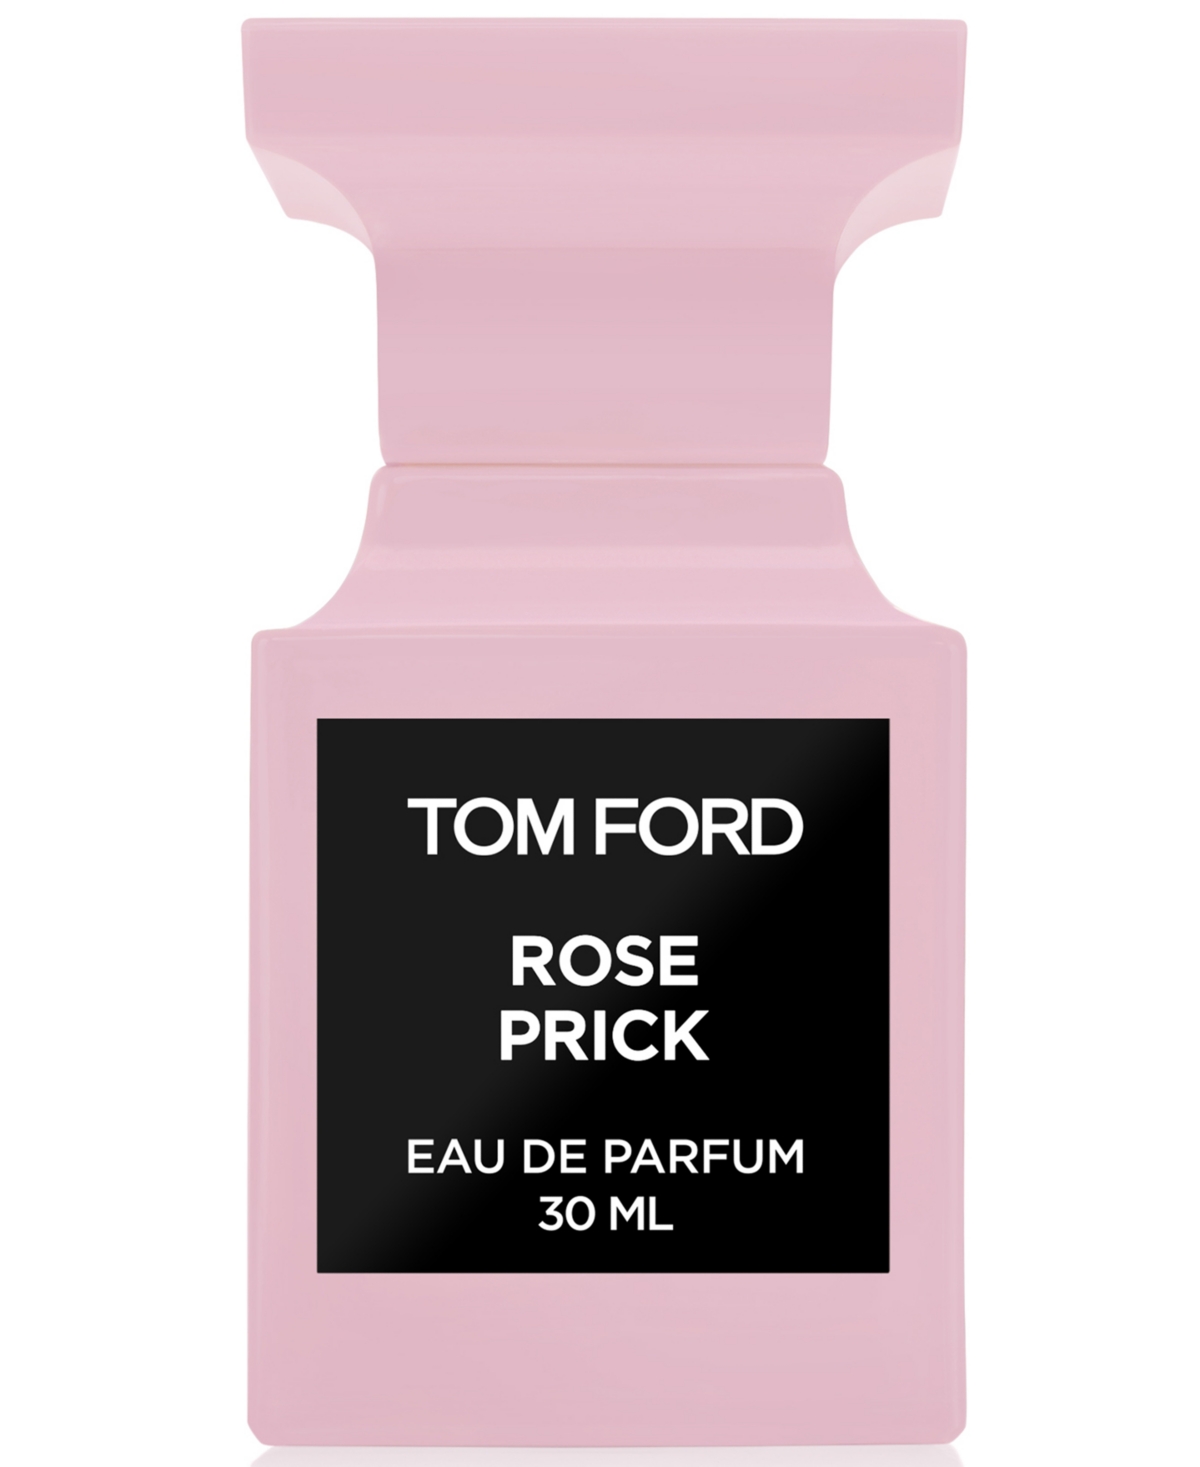 Tom Ford Rose Prick Eau de Parfum, 1-oz. & Reviews - Perfume - Beauty -  Macy's